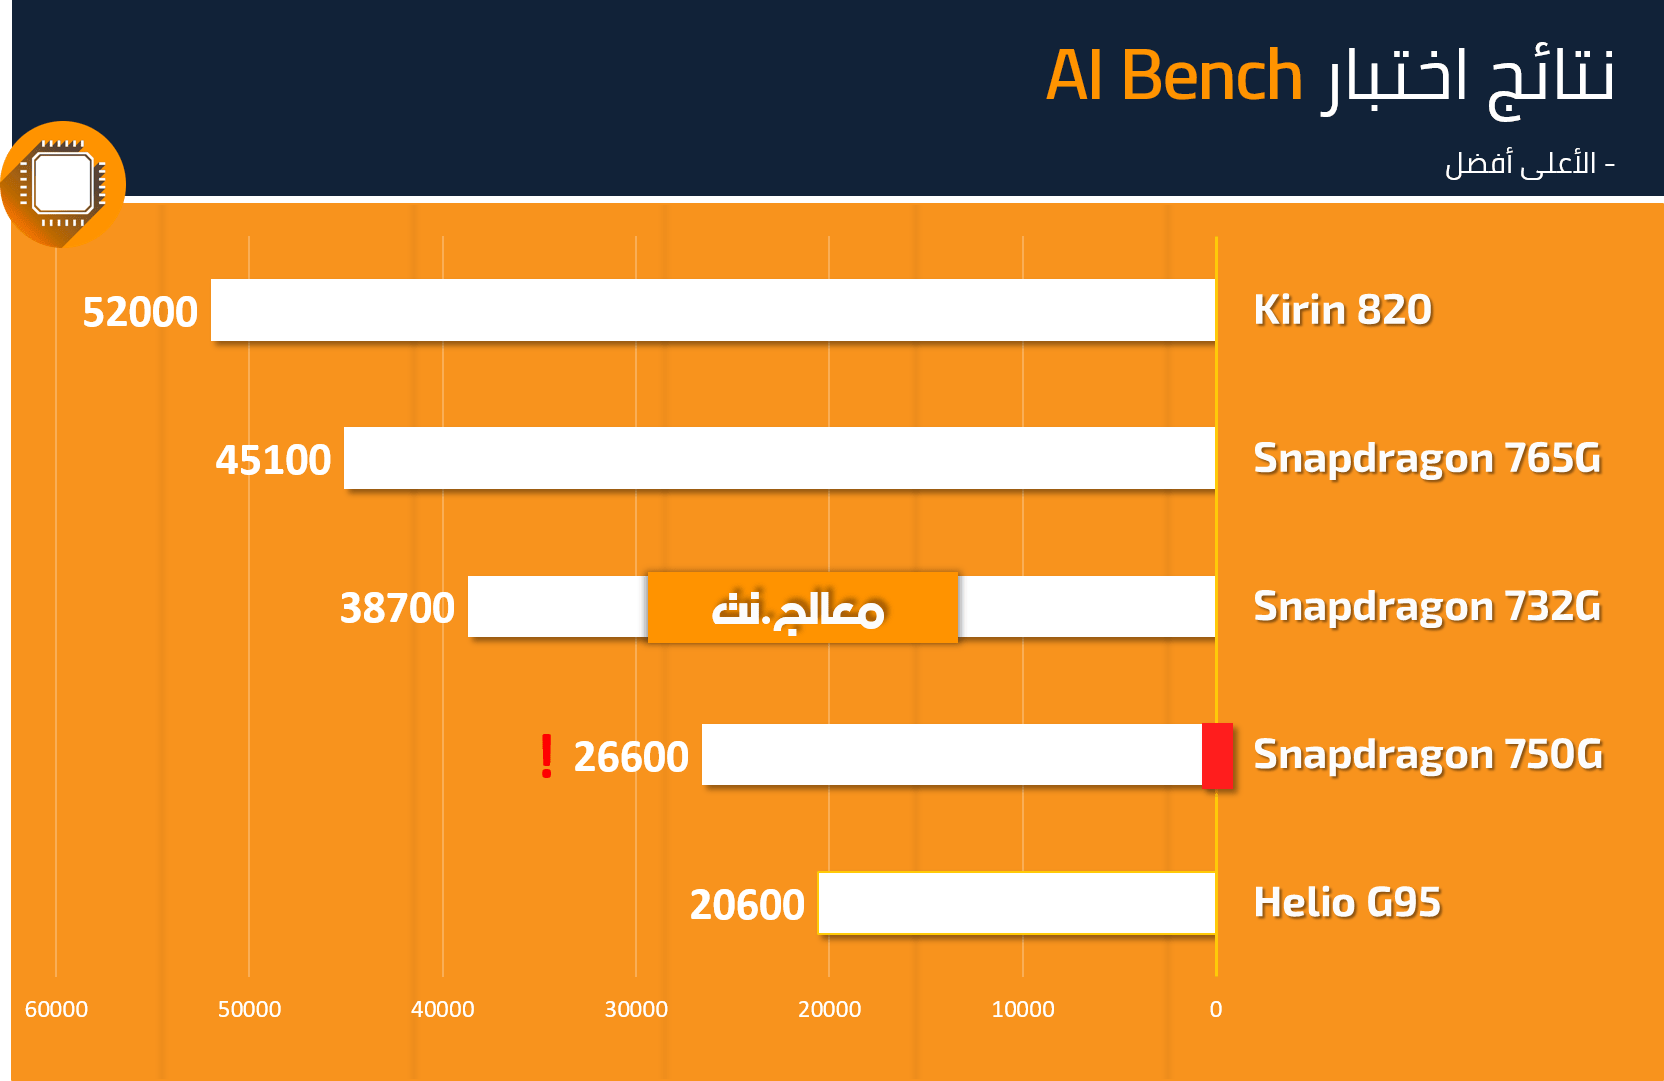 Snapdragon 750G AI Bench